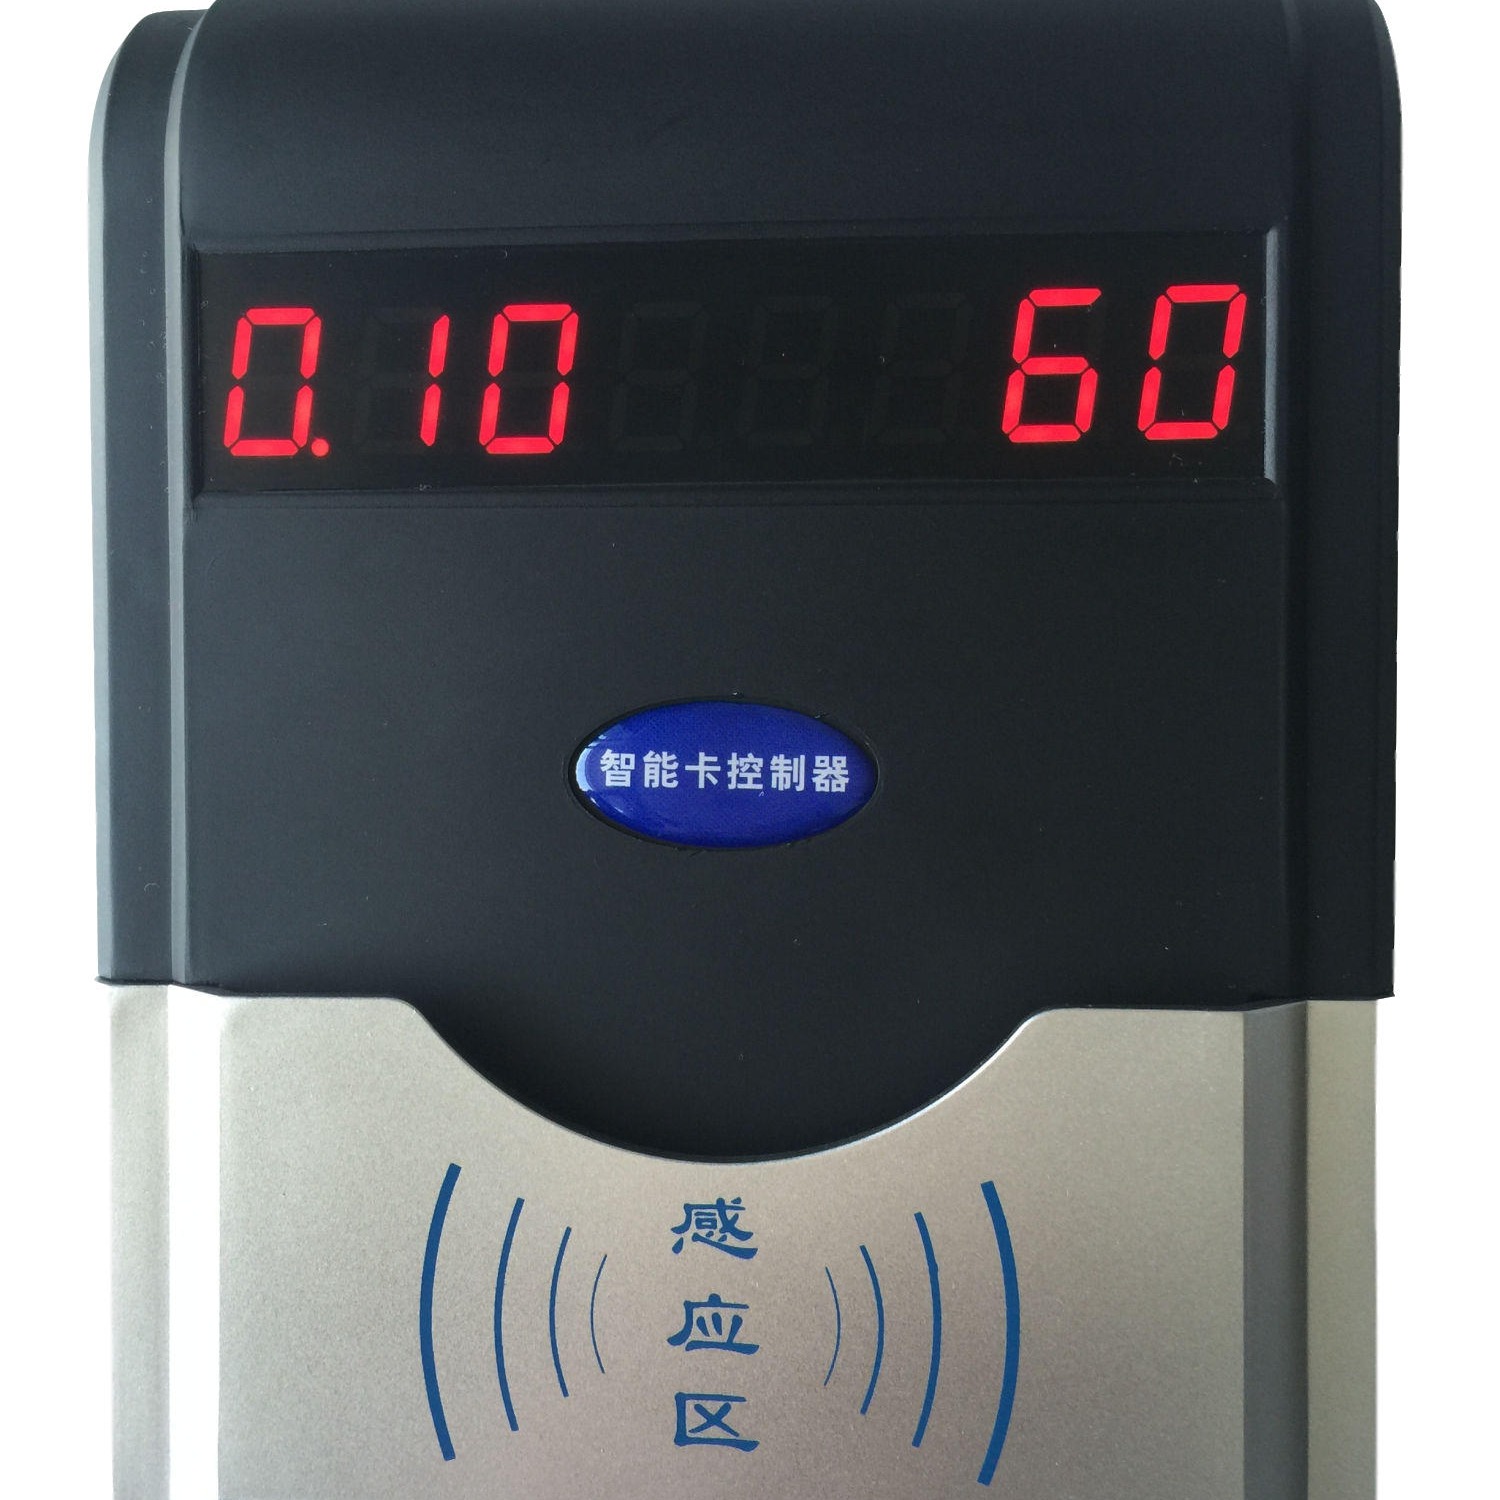 兴天下HF-660插卡淋浴器-浴室ic卡控制器,IC卡刷卡水控机